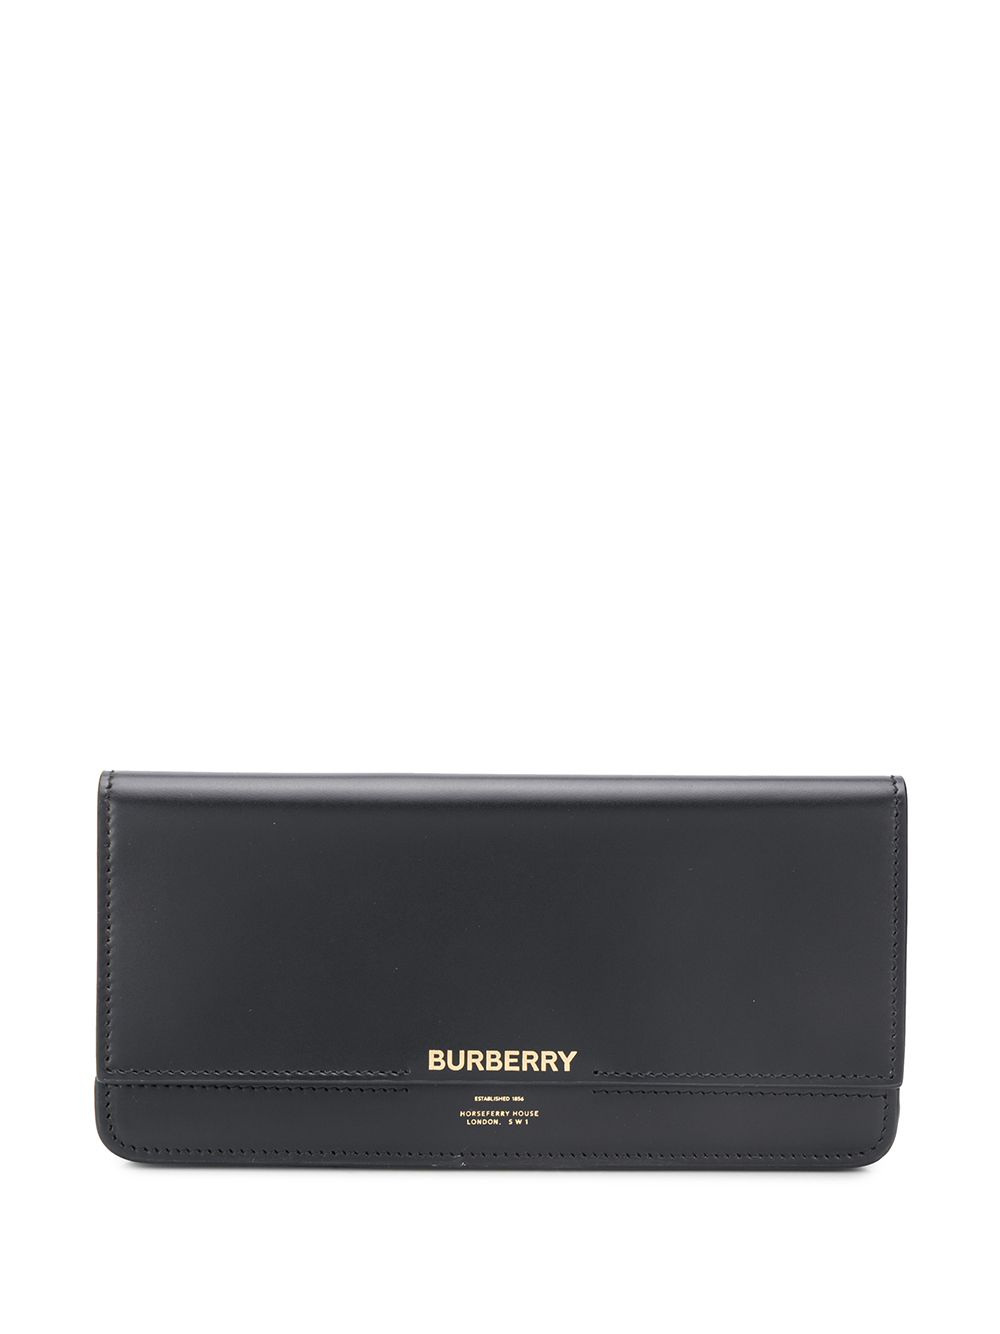 фото Burberry кошелек с логотипом